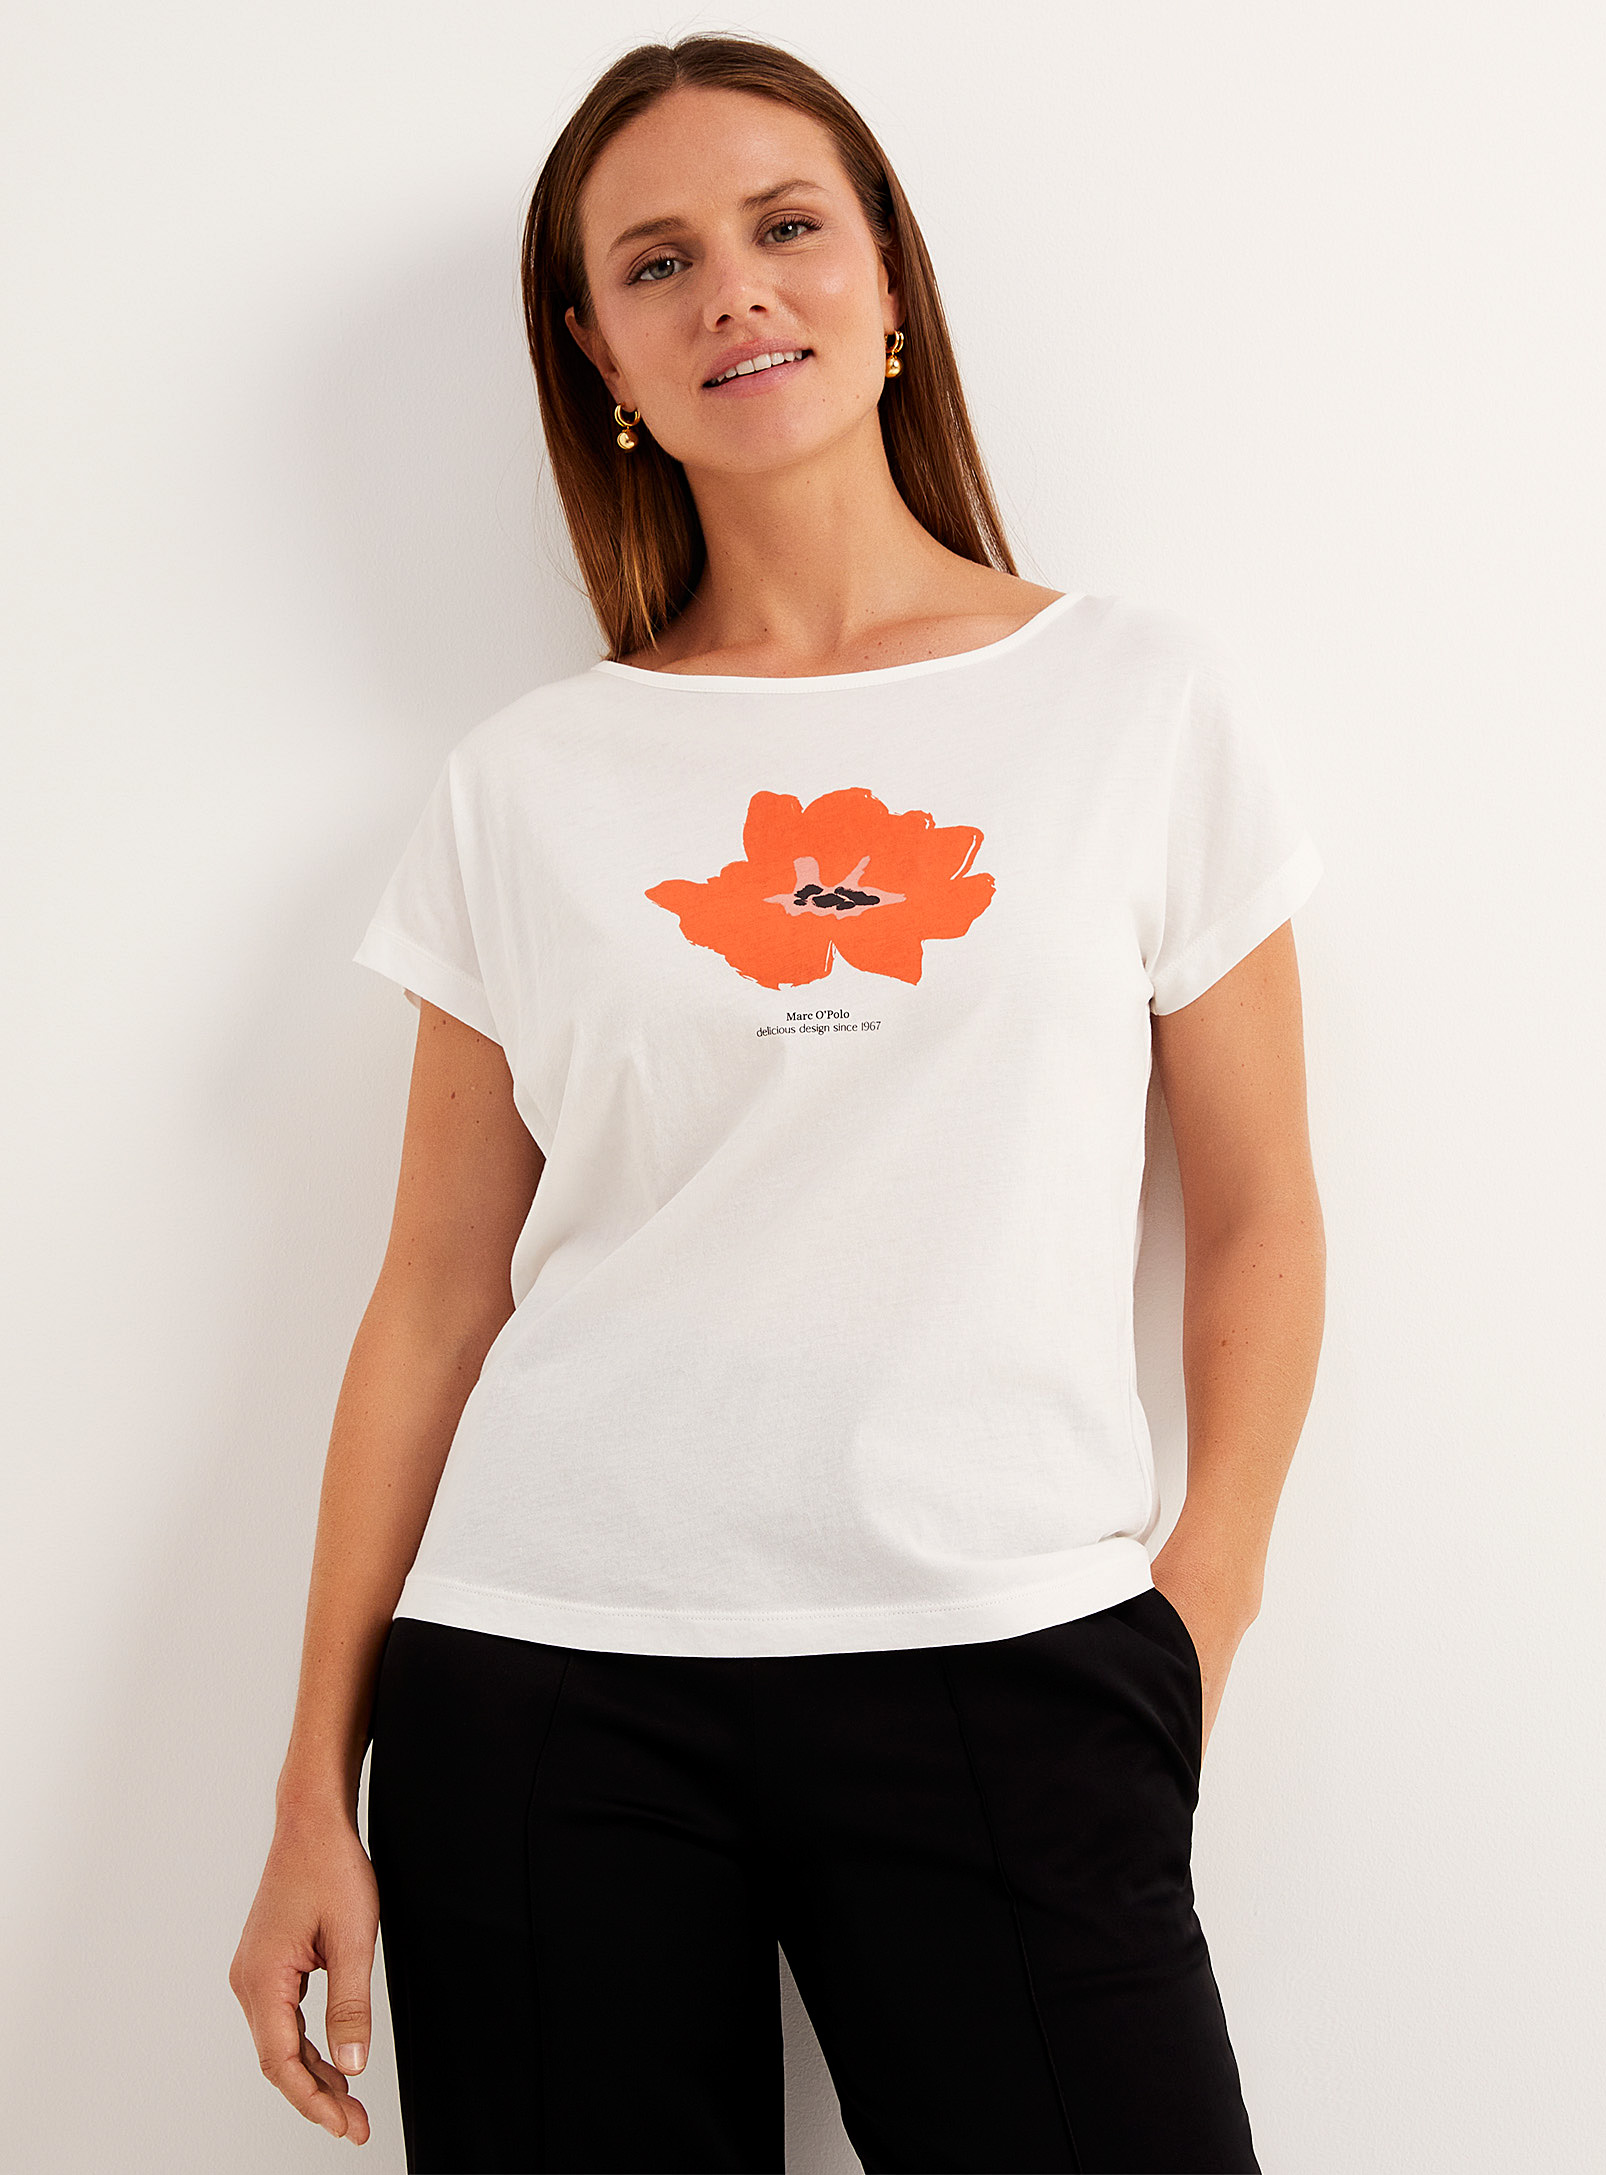 Marc O'Polo - Le t-shirt léger fleur signature